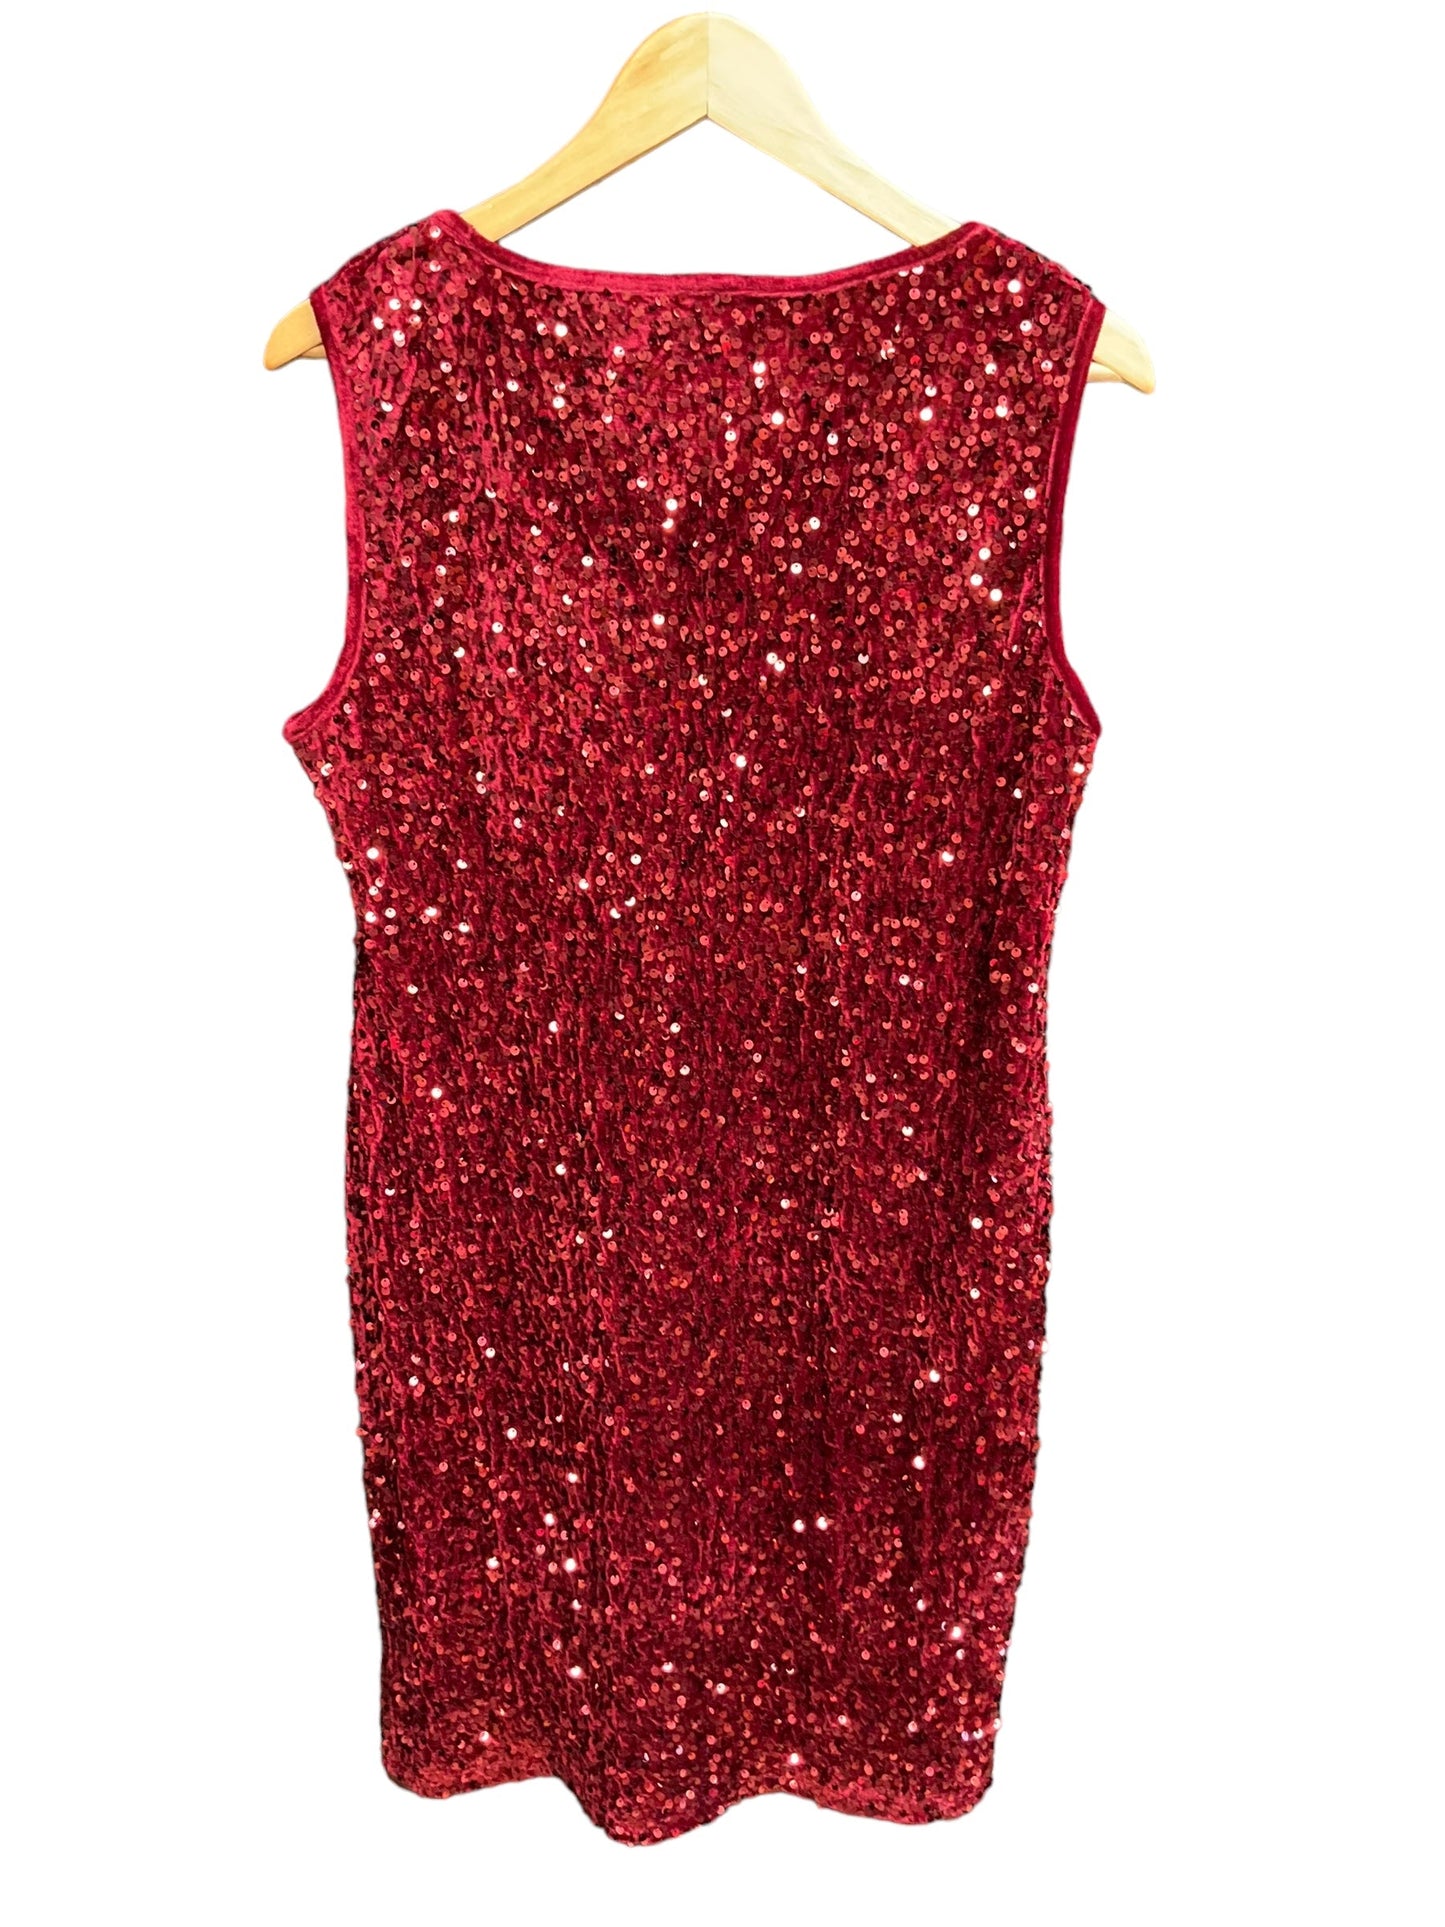 Red Dress Casual Midi Nina Leonard, Size L